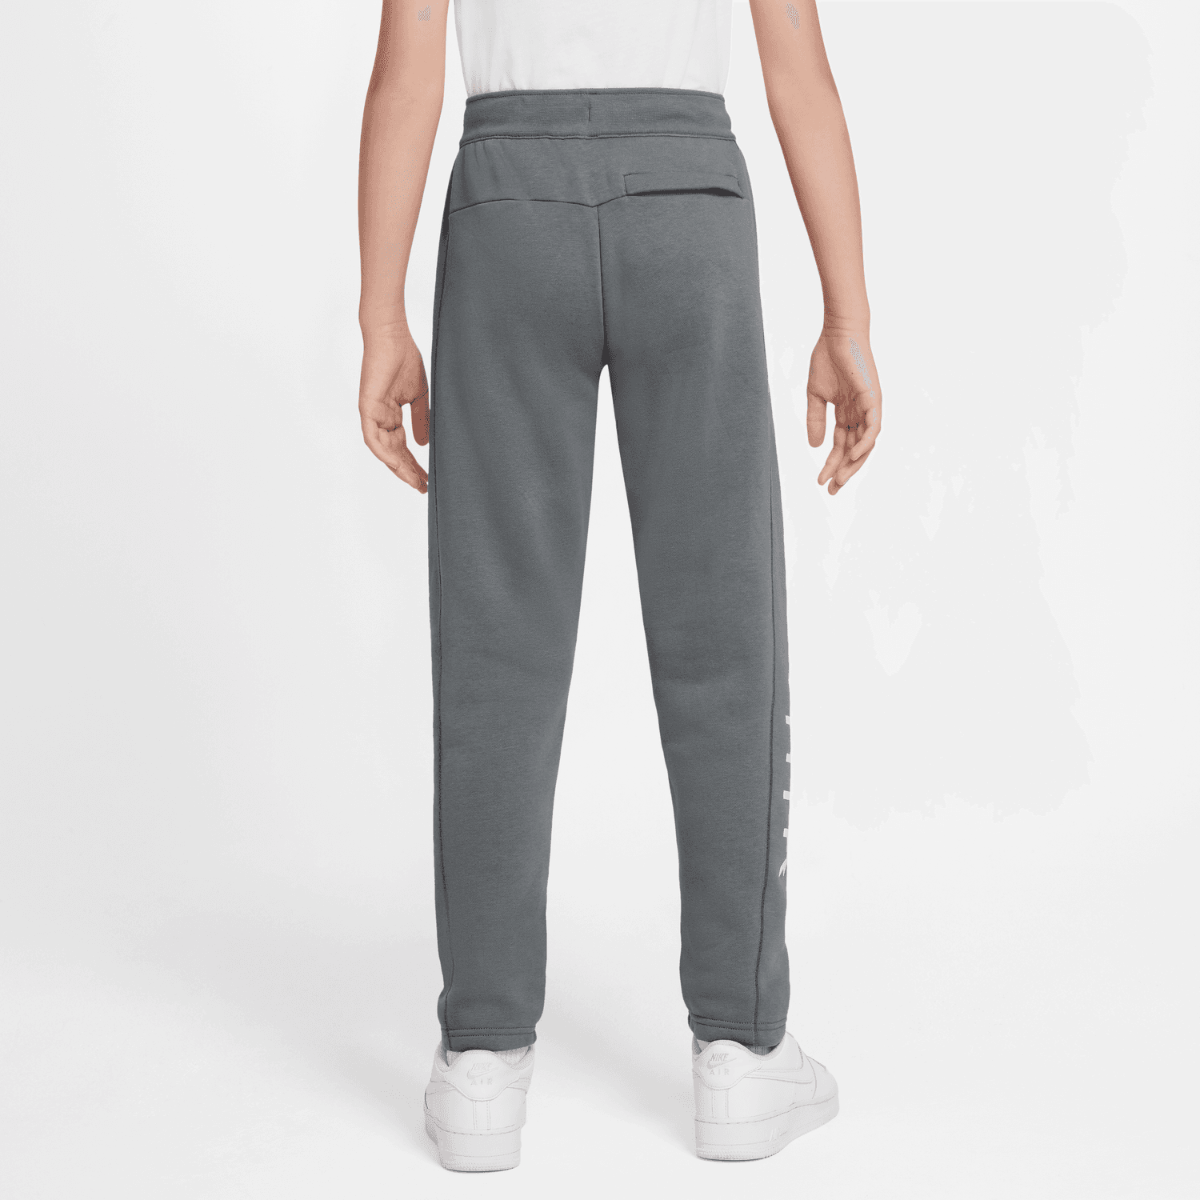 Pantalon Nike Air Junior - Gris/Blanc